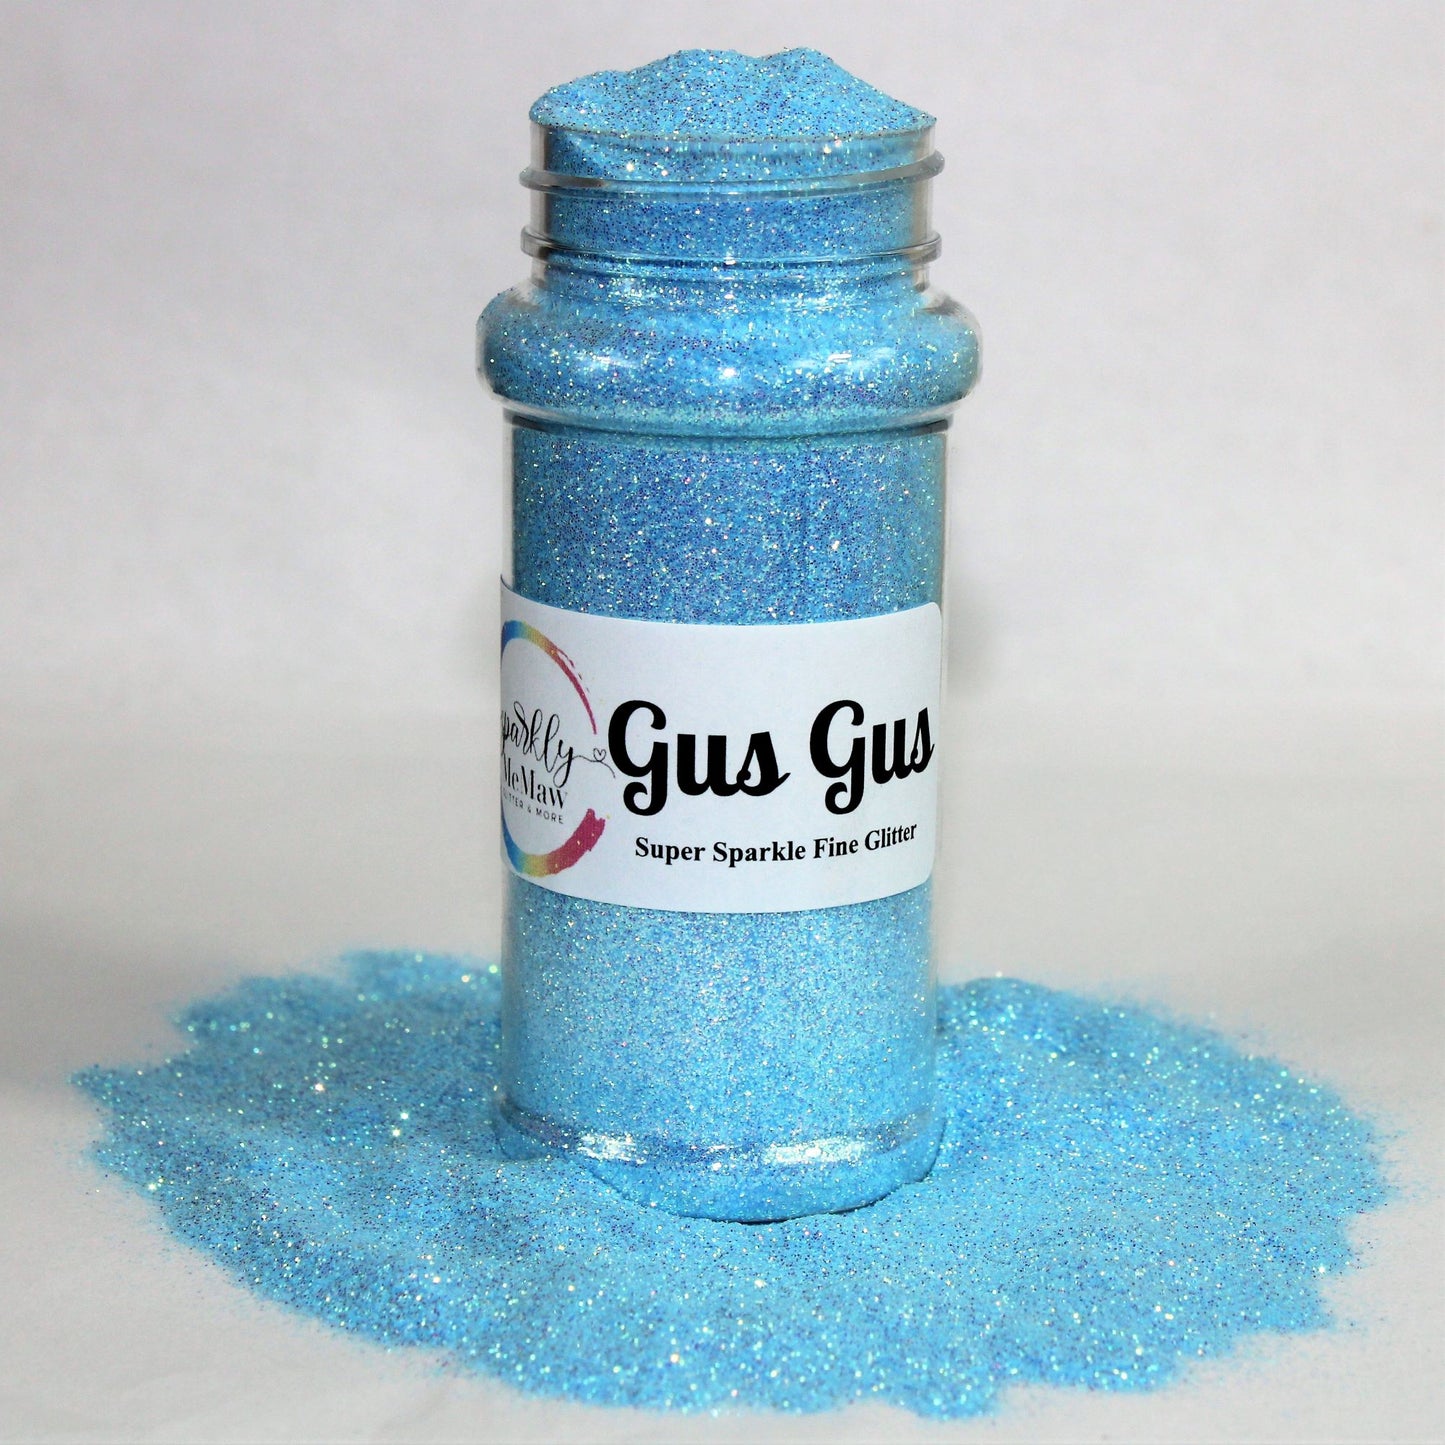 Gus Gus "High Sparkling" Fine Glitter